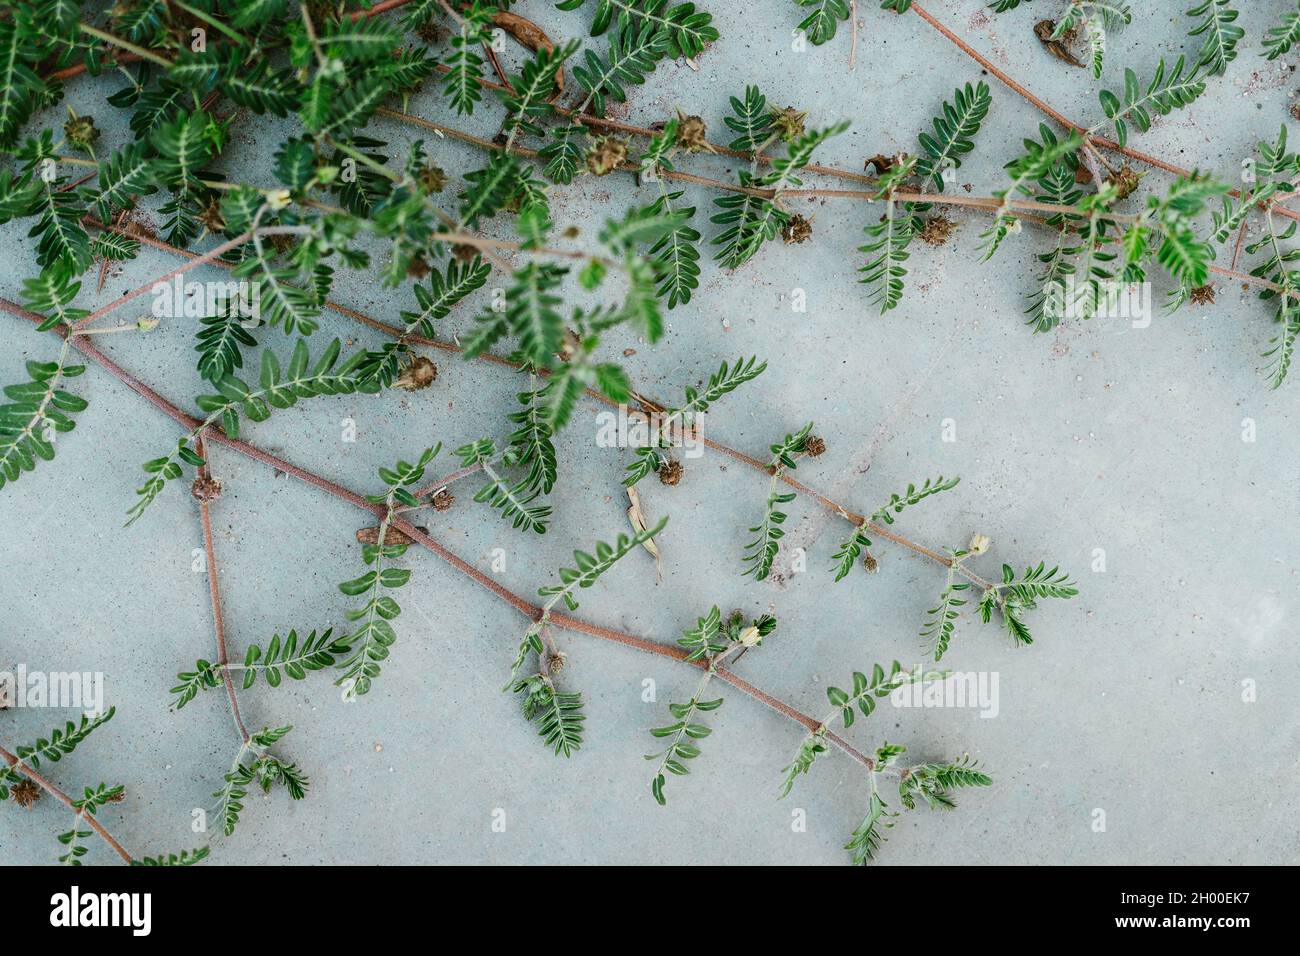 Die Zweige der Teufelsdorn-Pflanze Zweige mit grünen Blättern auf der  grauen Oberfläche Stockfotografie - Alamy